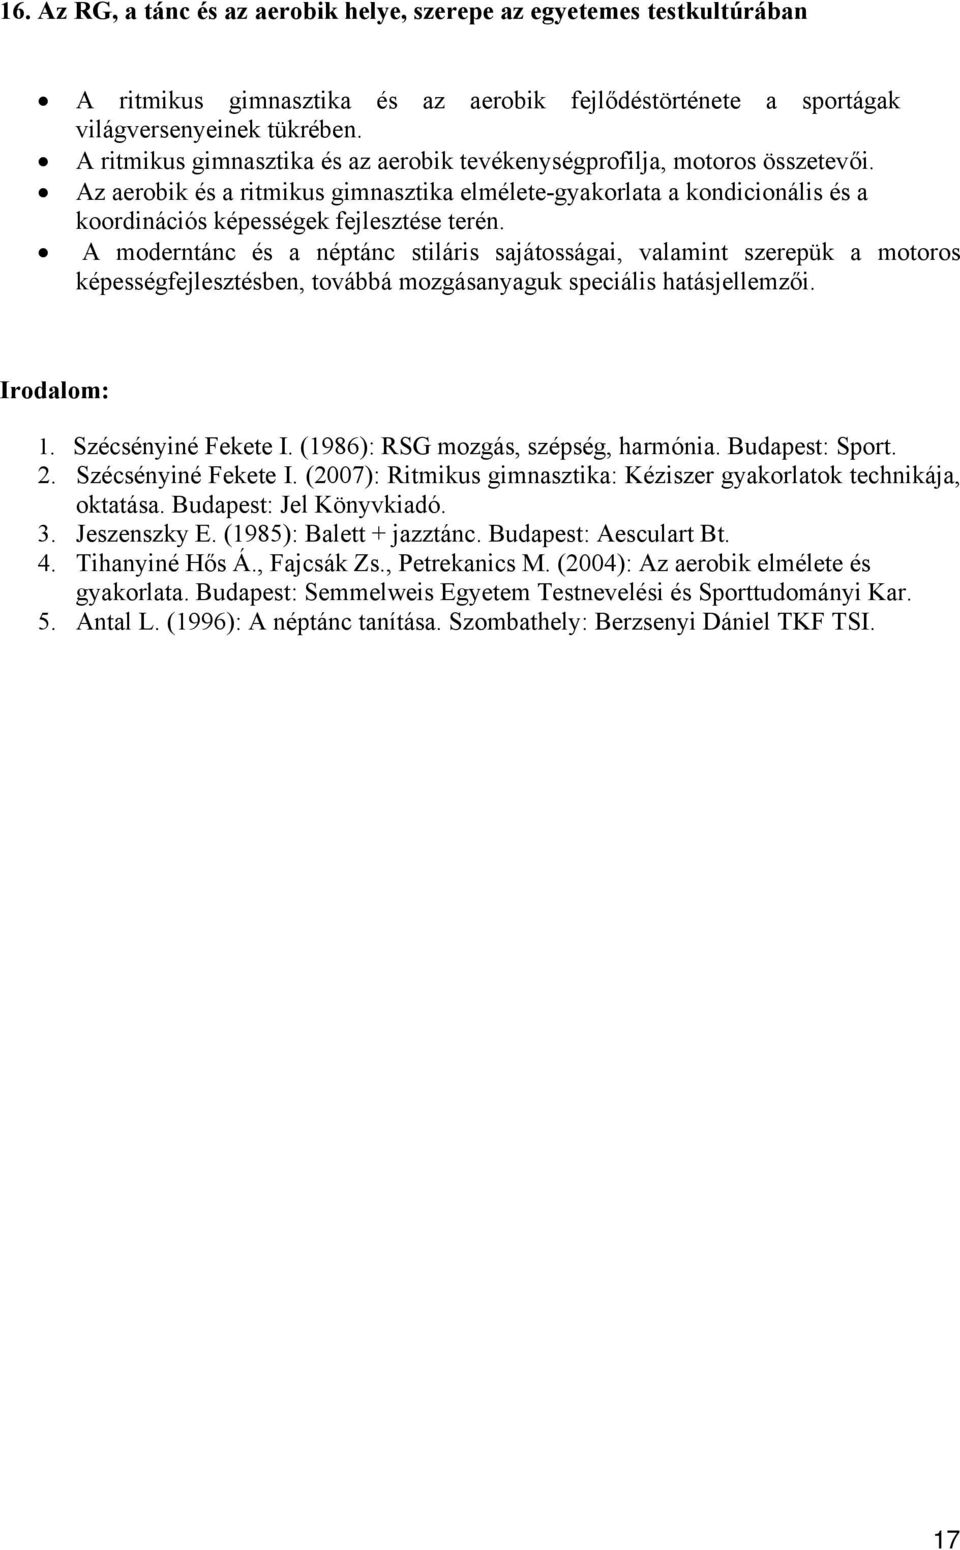 Semmelweis Egyetem Testnevelési és Sporttudományi Kar (TF) BSc Testnevelő-edző  szak záróvizsga tételsor - PDF Free Download